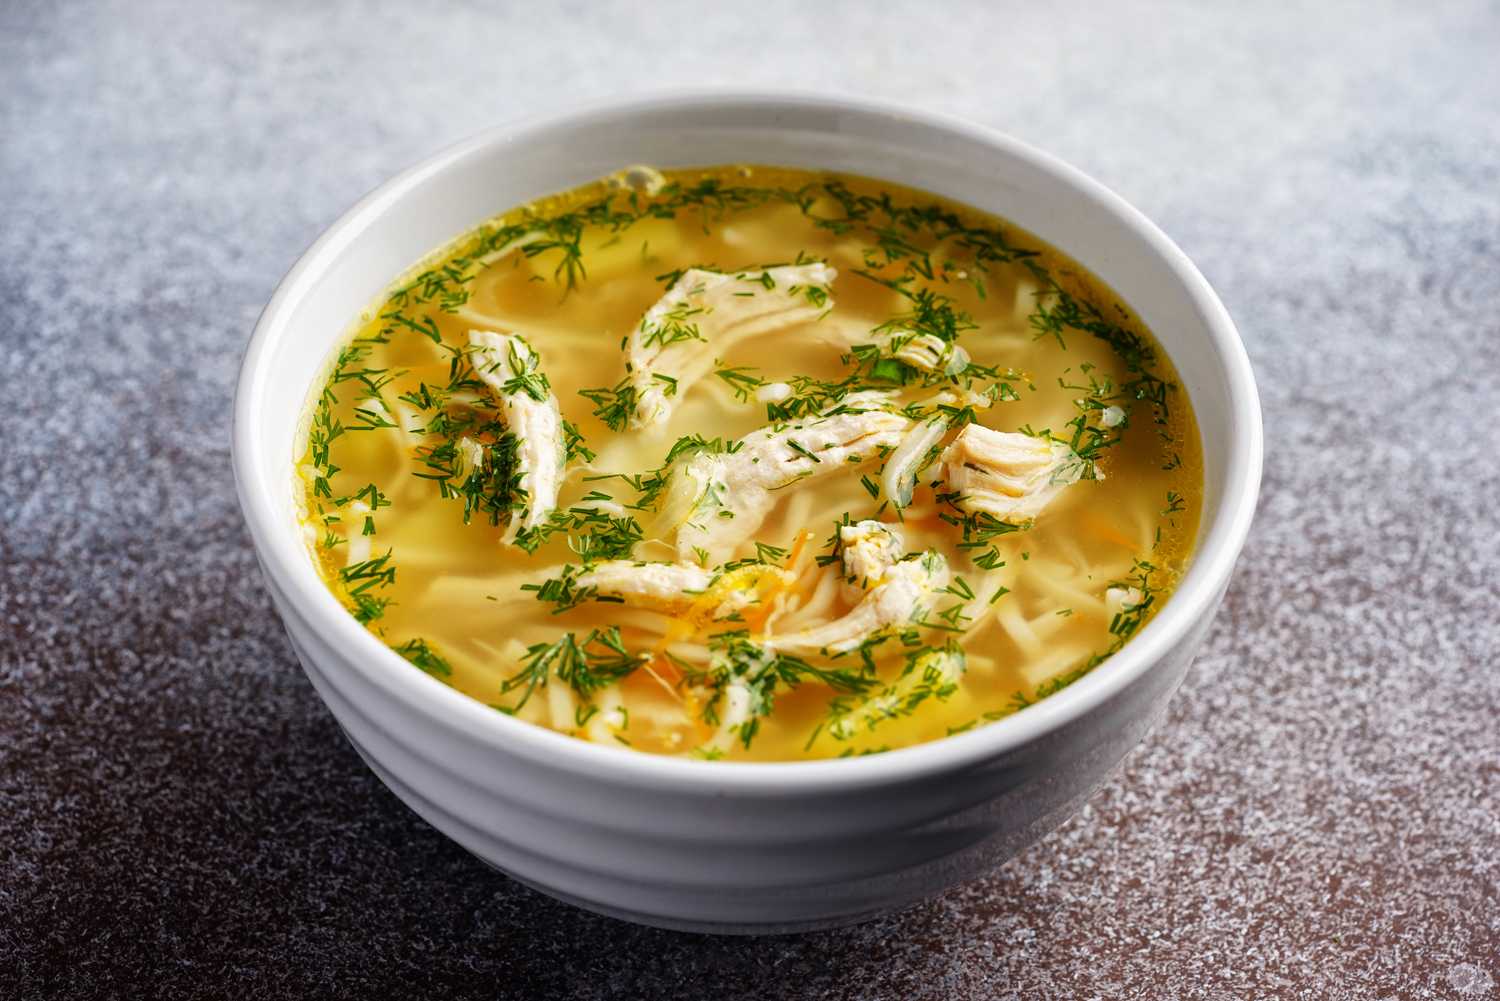 Суп лапша с курицей - самое популярное первое блюдо: рецепт с фото и видео